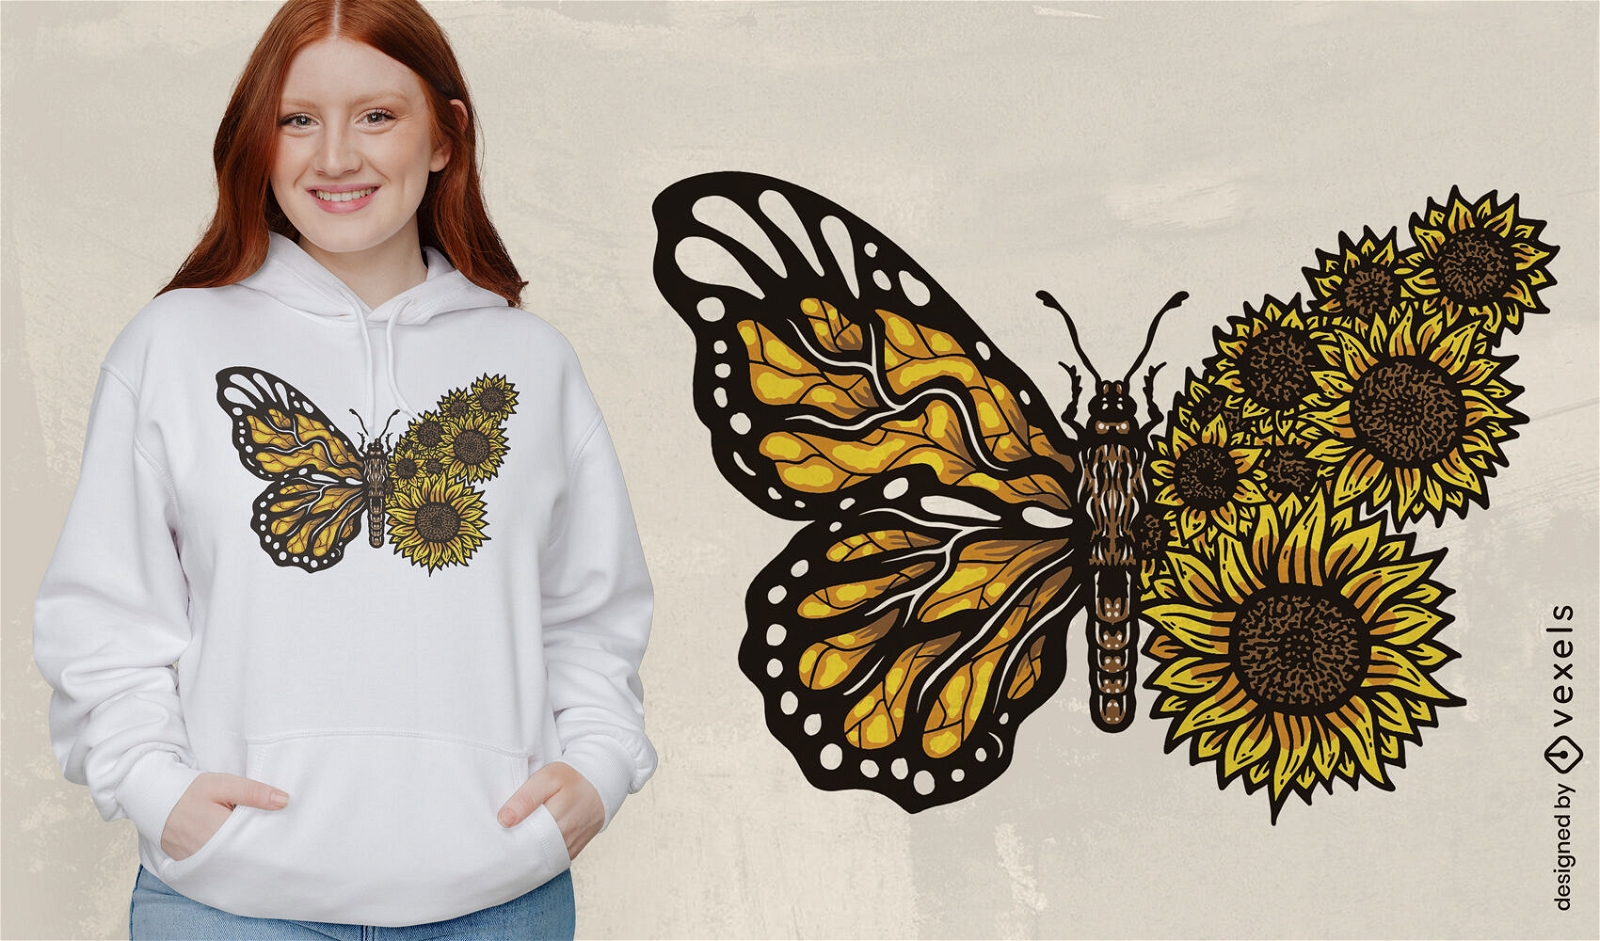 Dise?o de camiseta de mariposa monarca girasol